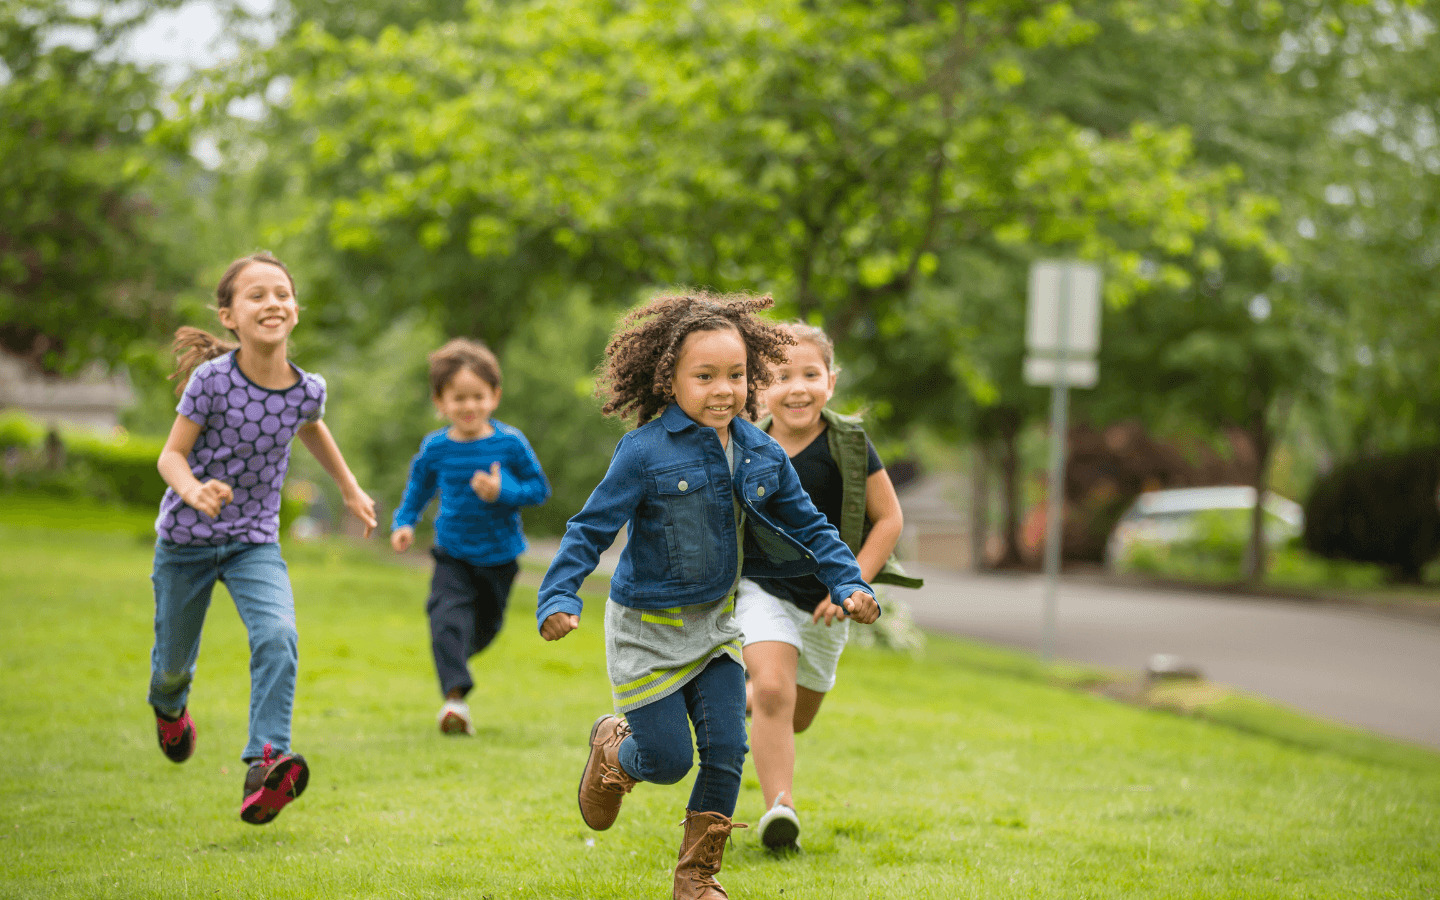 children running together